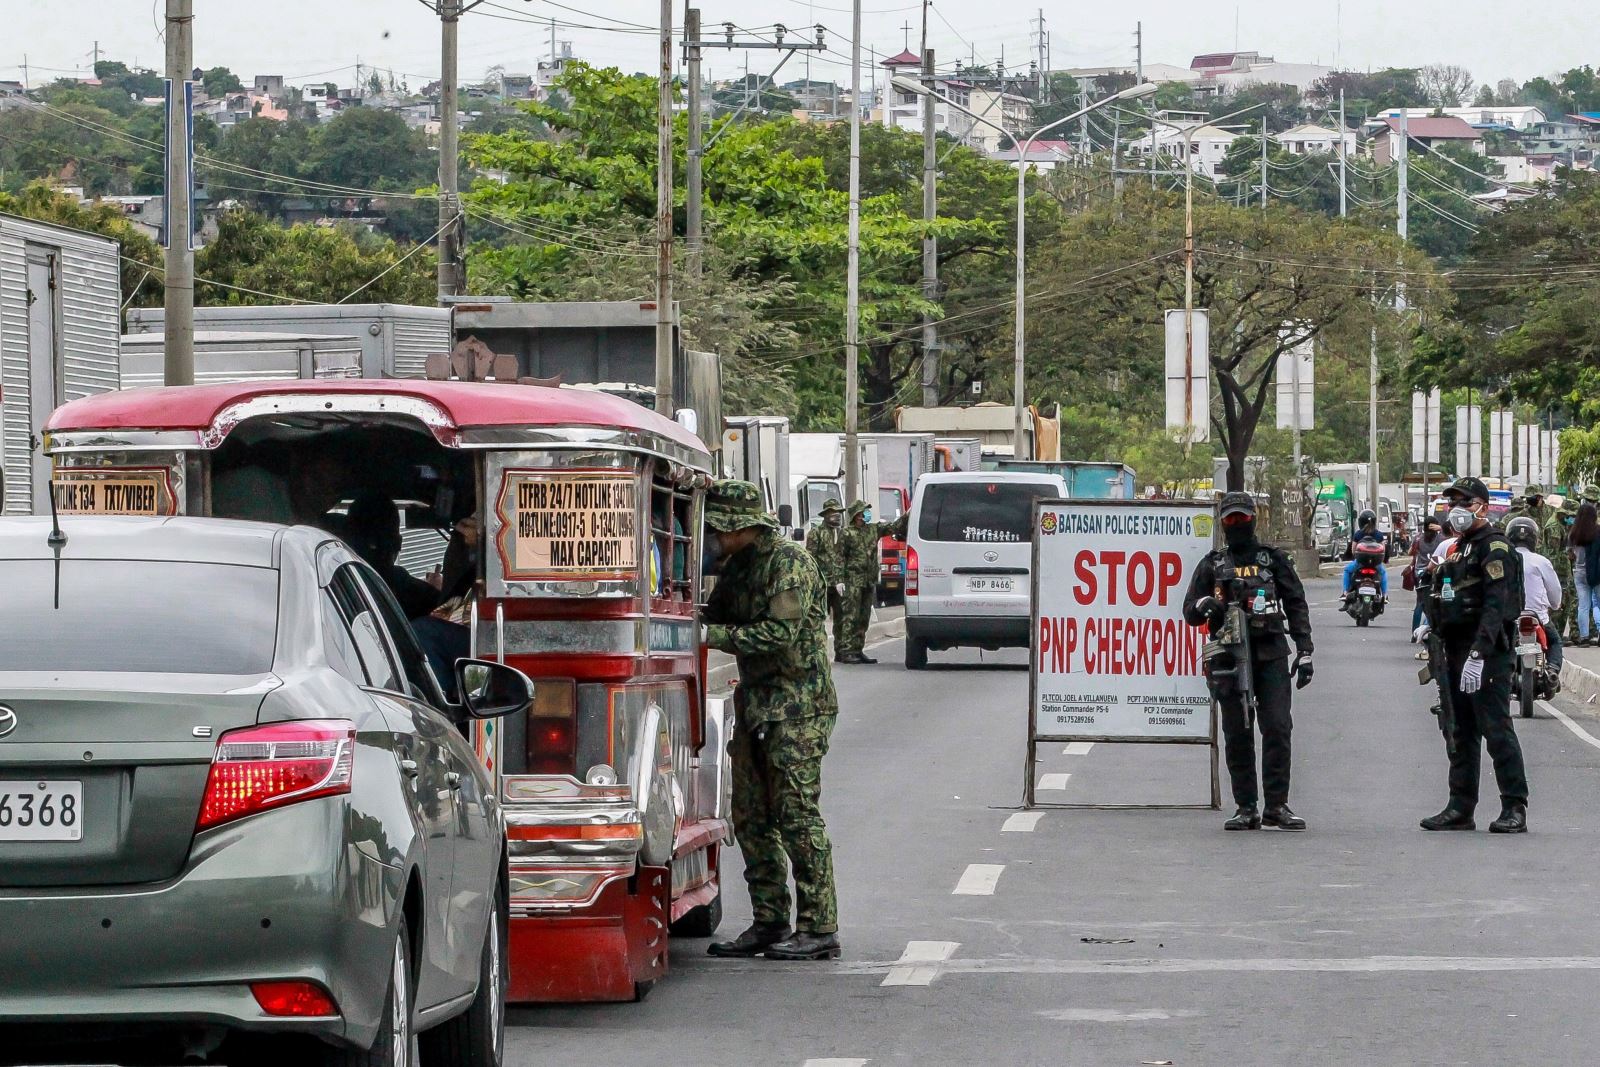 Cảnh sát kiểm tra thân nhiệt của người dân tại một điểm kiểm soát ở Quezon, Philippines ngày 16/3/2020, nhằm ngăn chặn sự lây lan của COVID-19